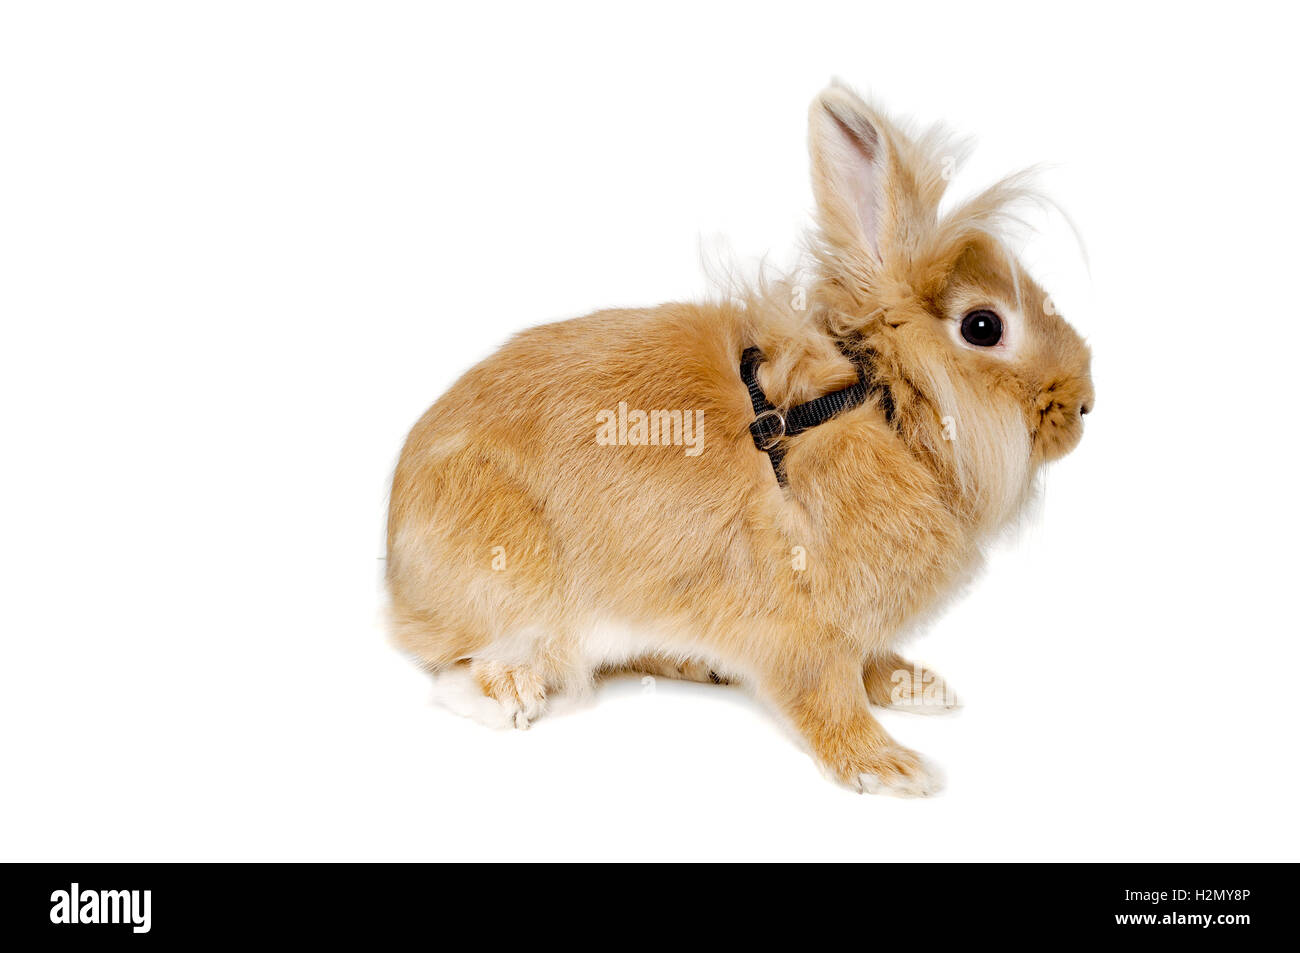 Rabbit isolated on white background Stock Photo